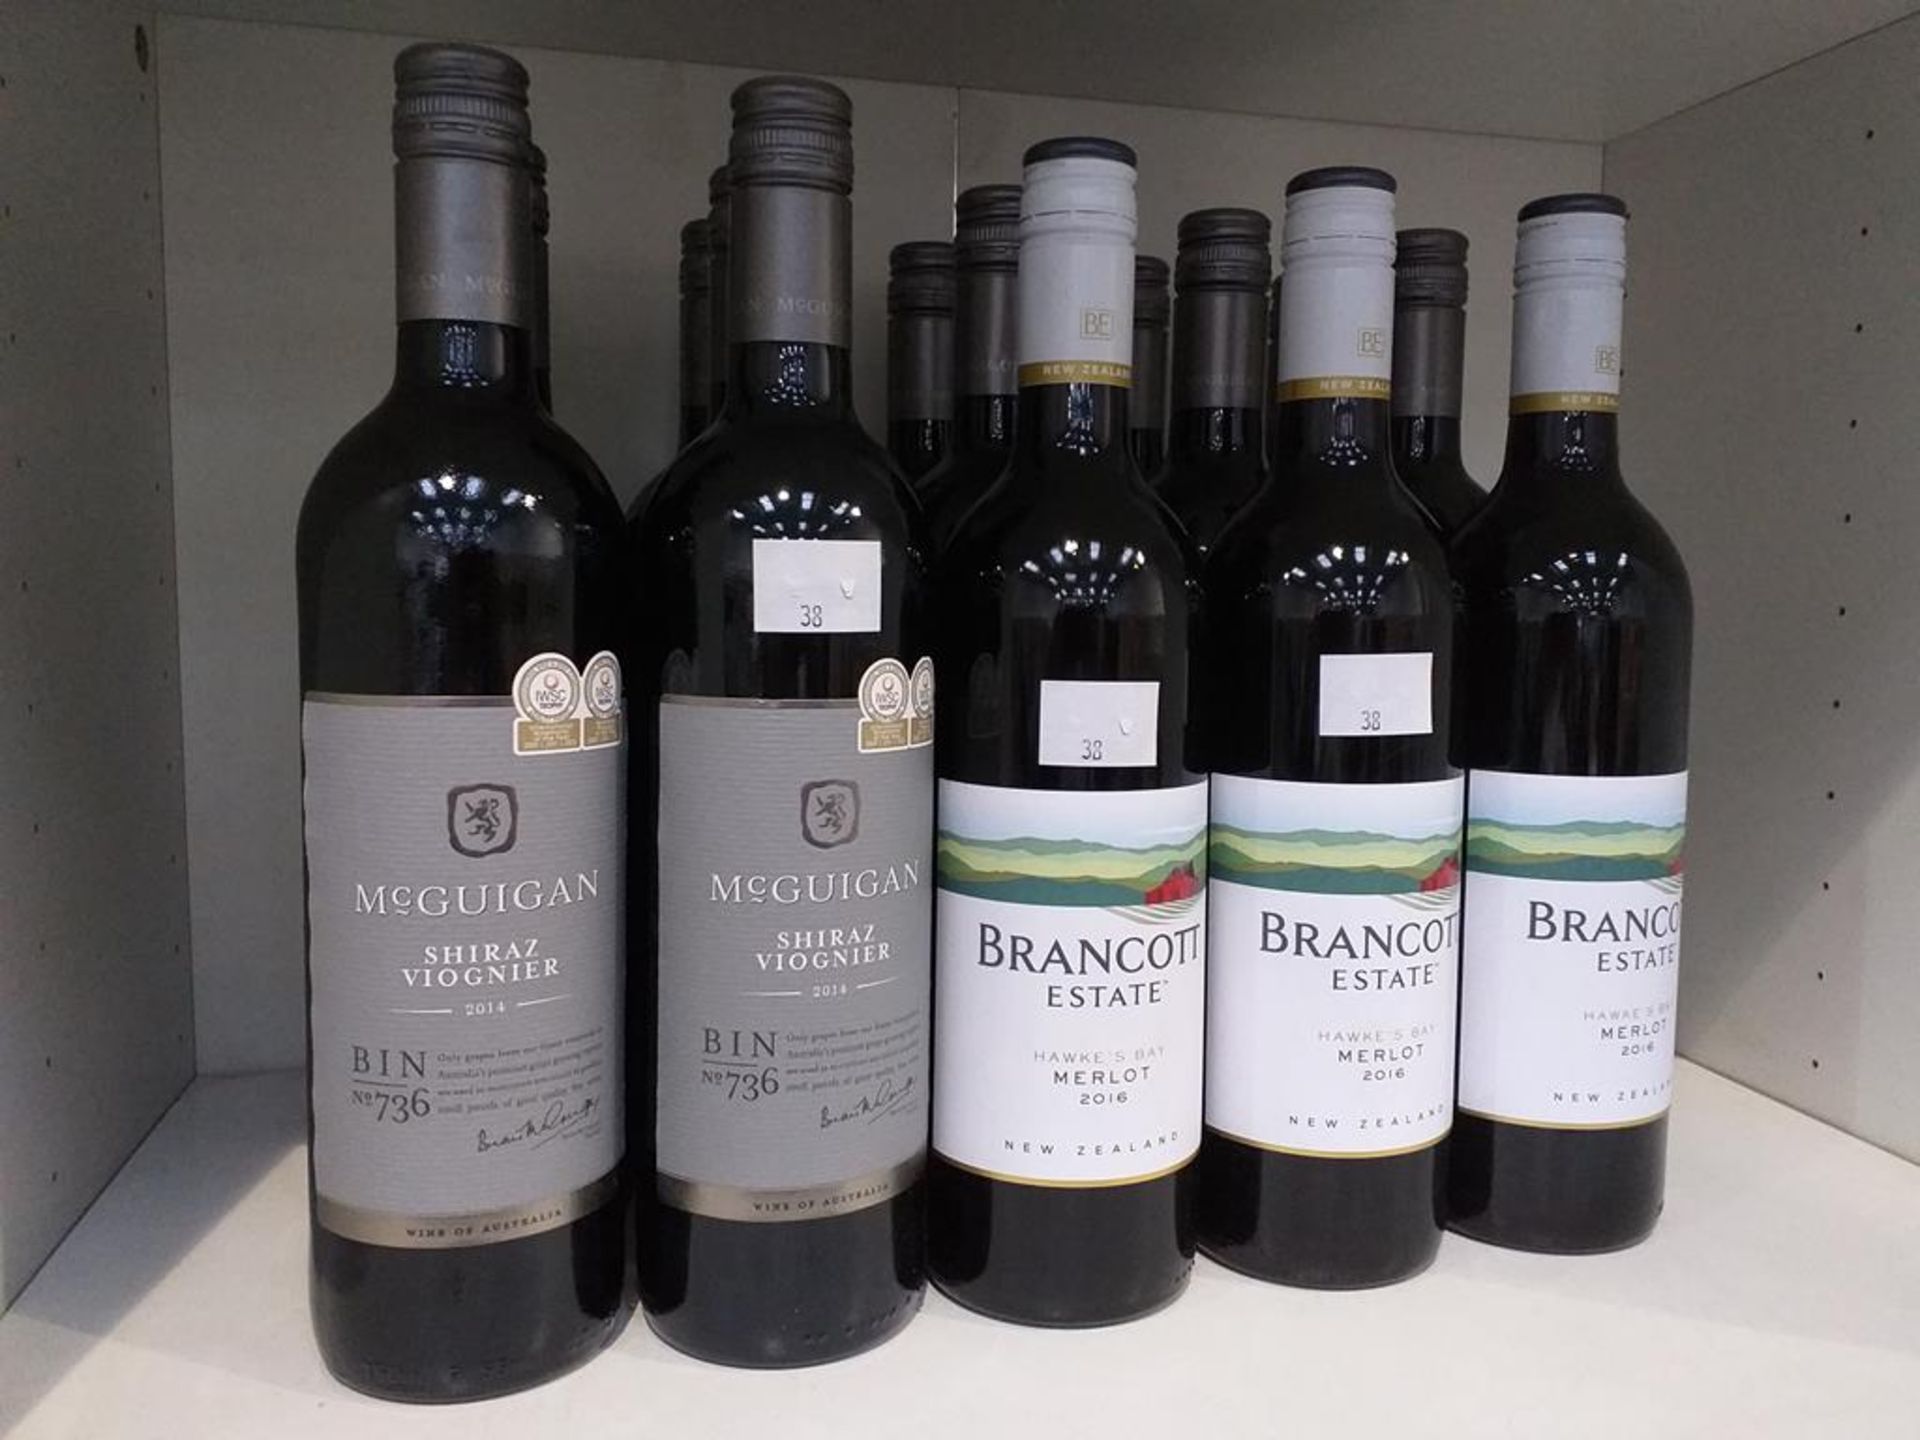 Twelve bottles of McGuigan Bin No 736 Shiraz Viognier 2014 Red Wine and three bottles of Brancott Es